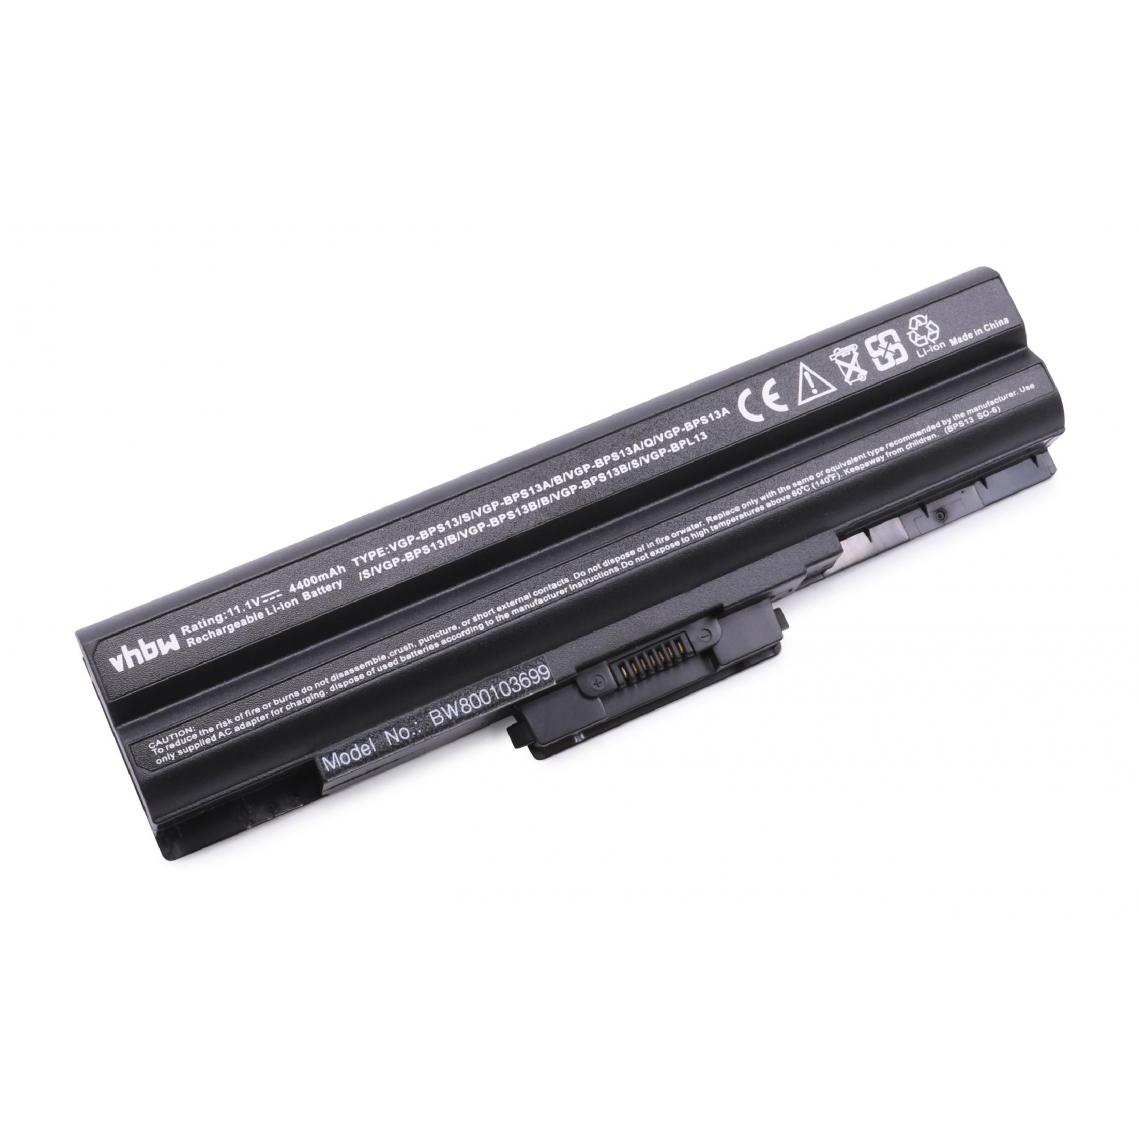 Vhbw - vhbw Batterie compatible avec Sony Vaio VPCS135FG/W, VPCS135FH/P, VPCS136FA/B, VPCS136FG/B ordinateur portable (4400mAh, 11,1V, noir) - Batterie PC Portable